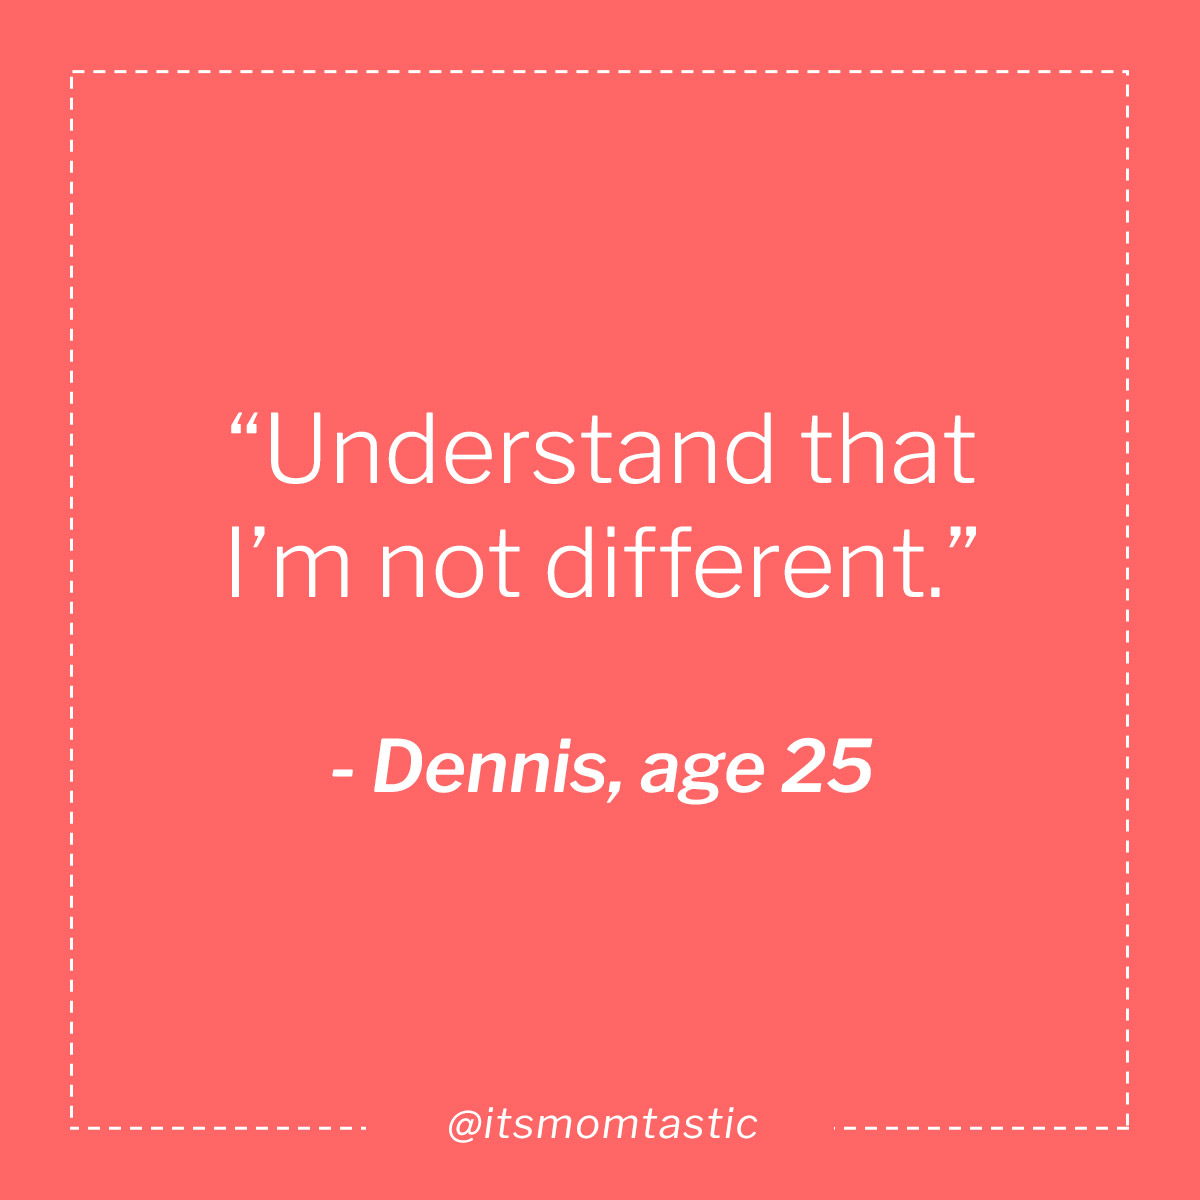 Dennis, age 25